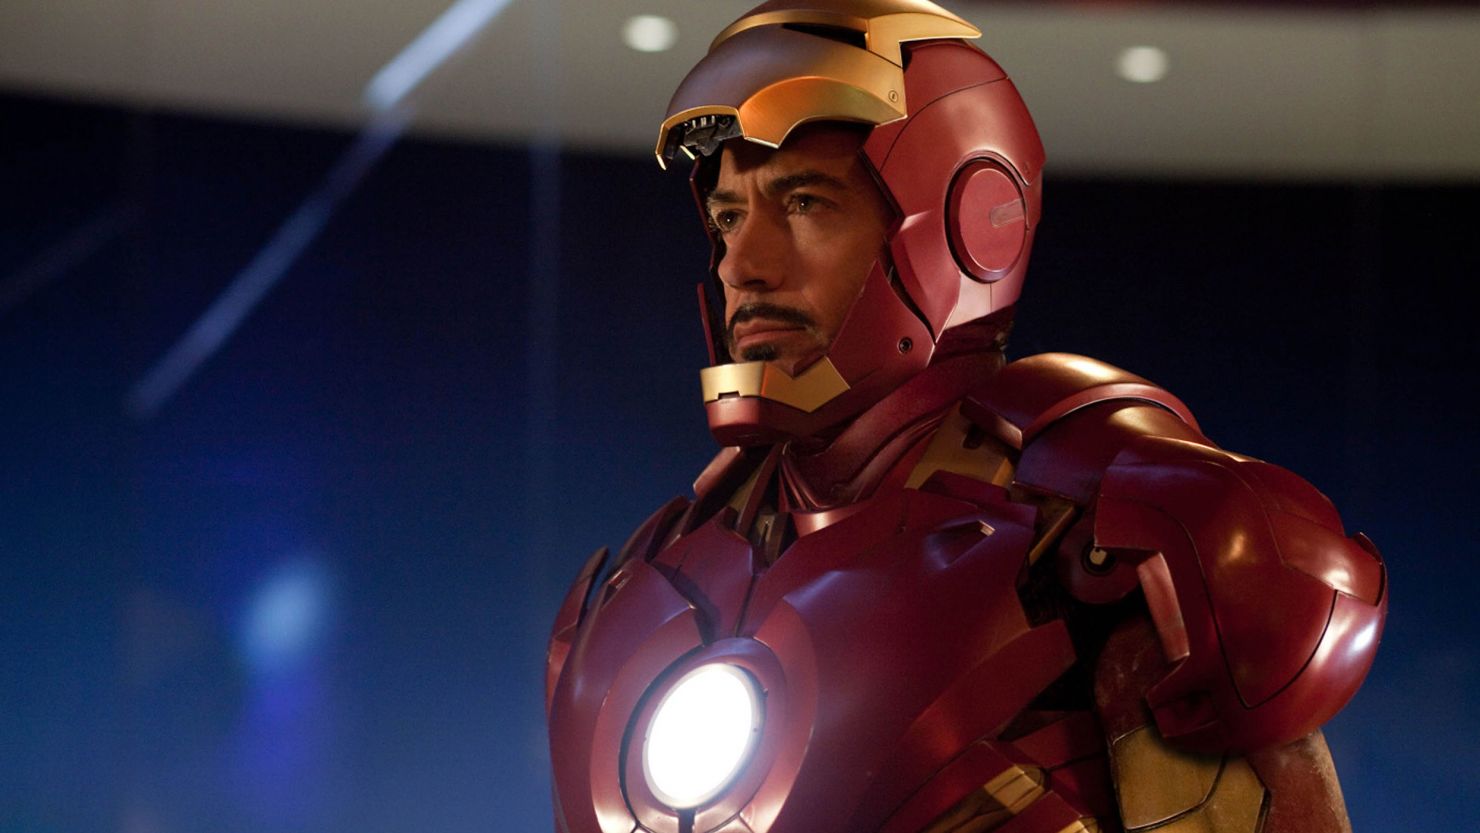 Robert Downey Jr. utesluter inte en återkomst för Iron Man